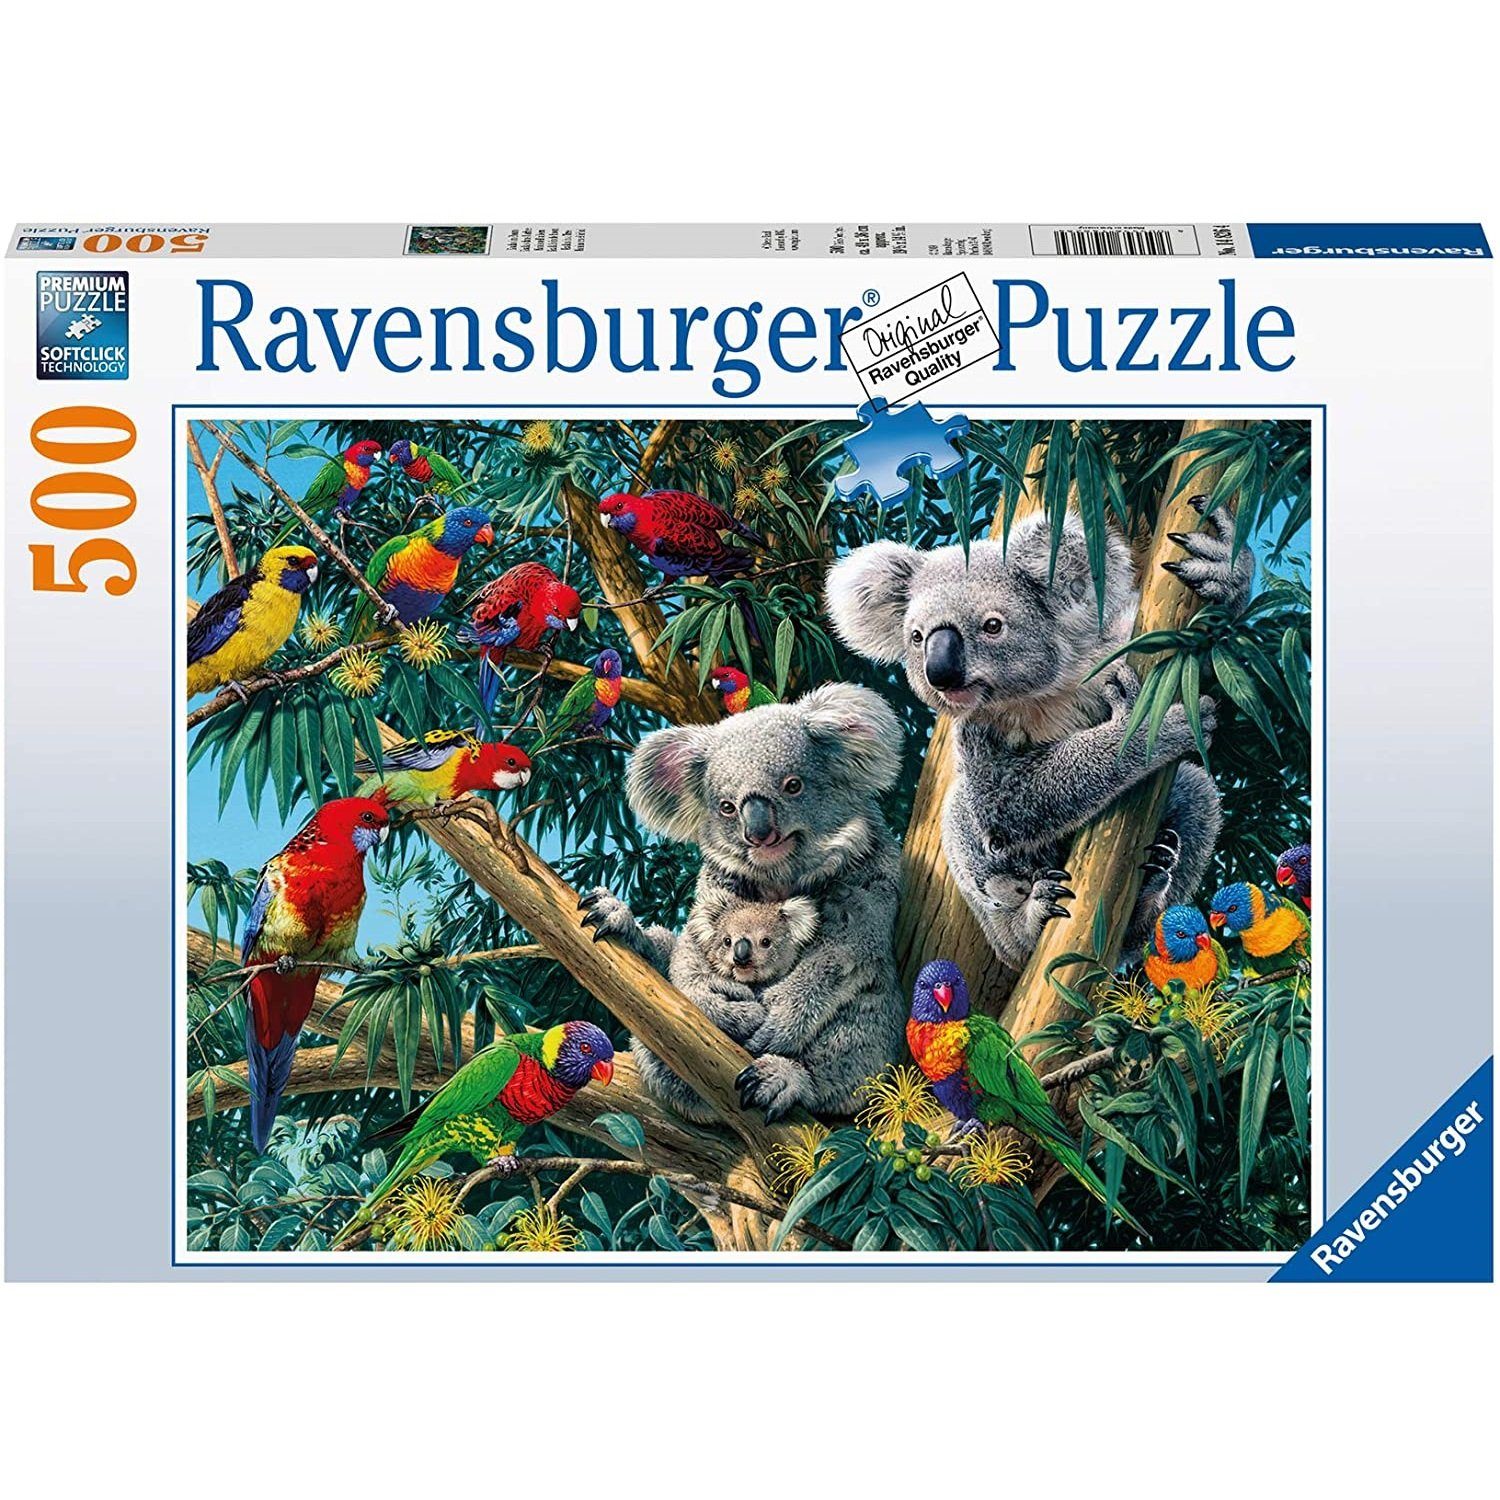 Ravensburger Puzzle Ravensburger - Koalas im Baum, 500 Teile Puzzle, 500 Puzzleteile